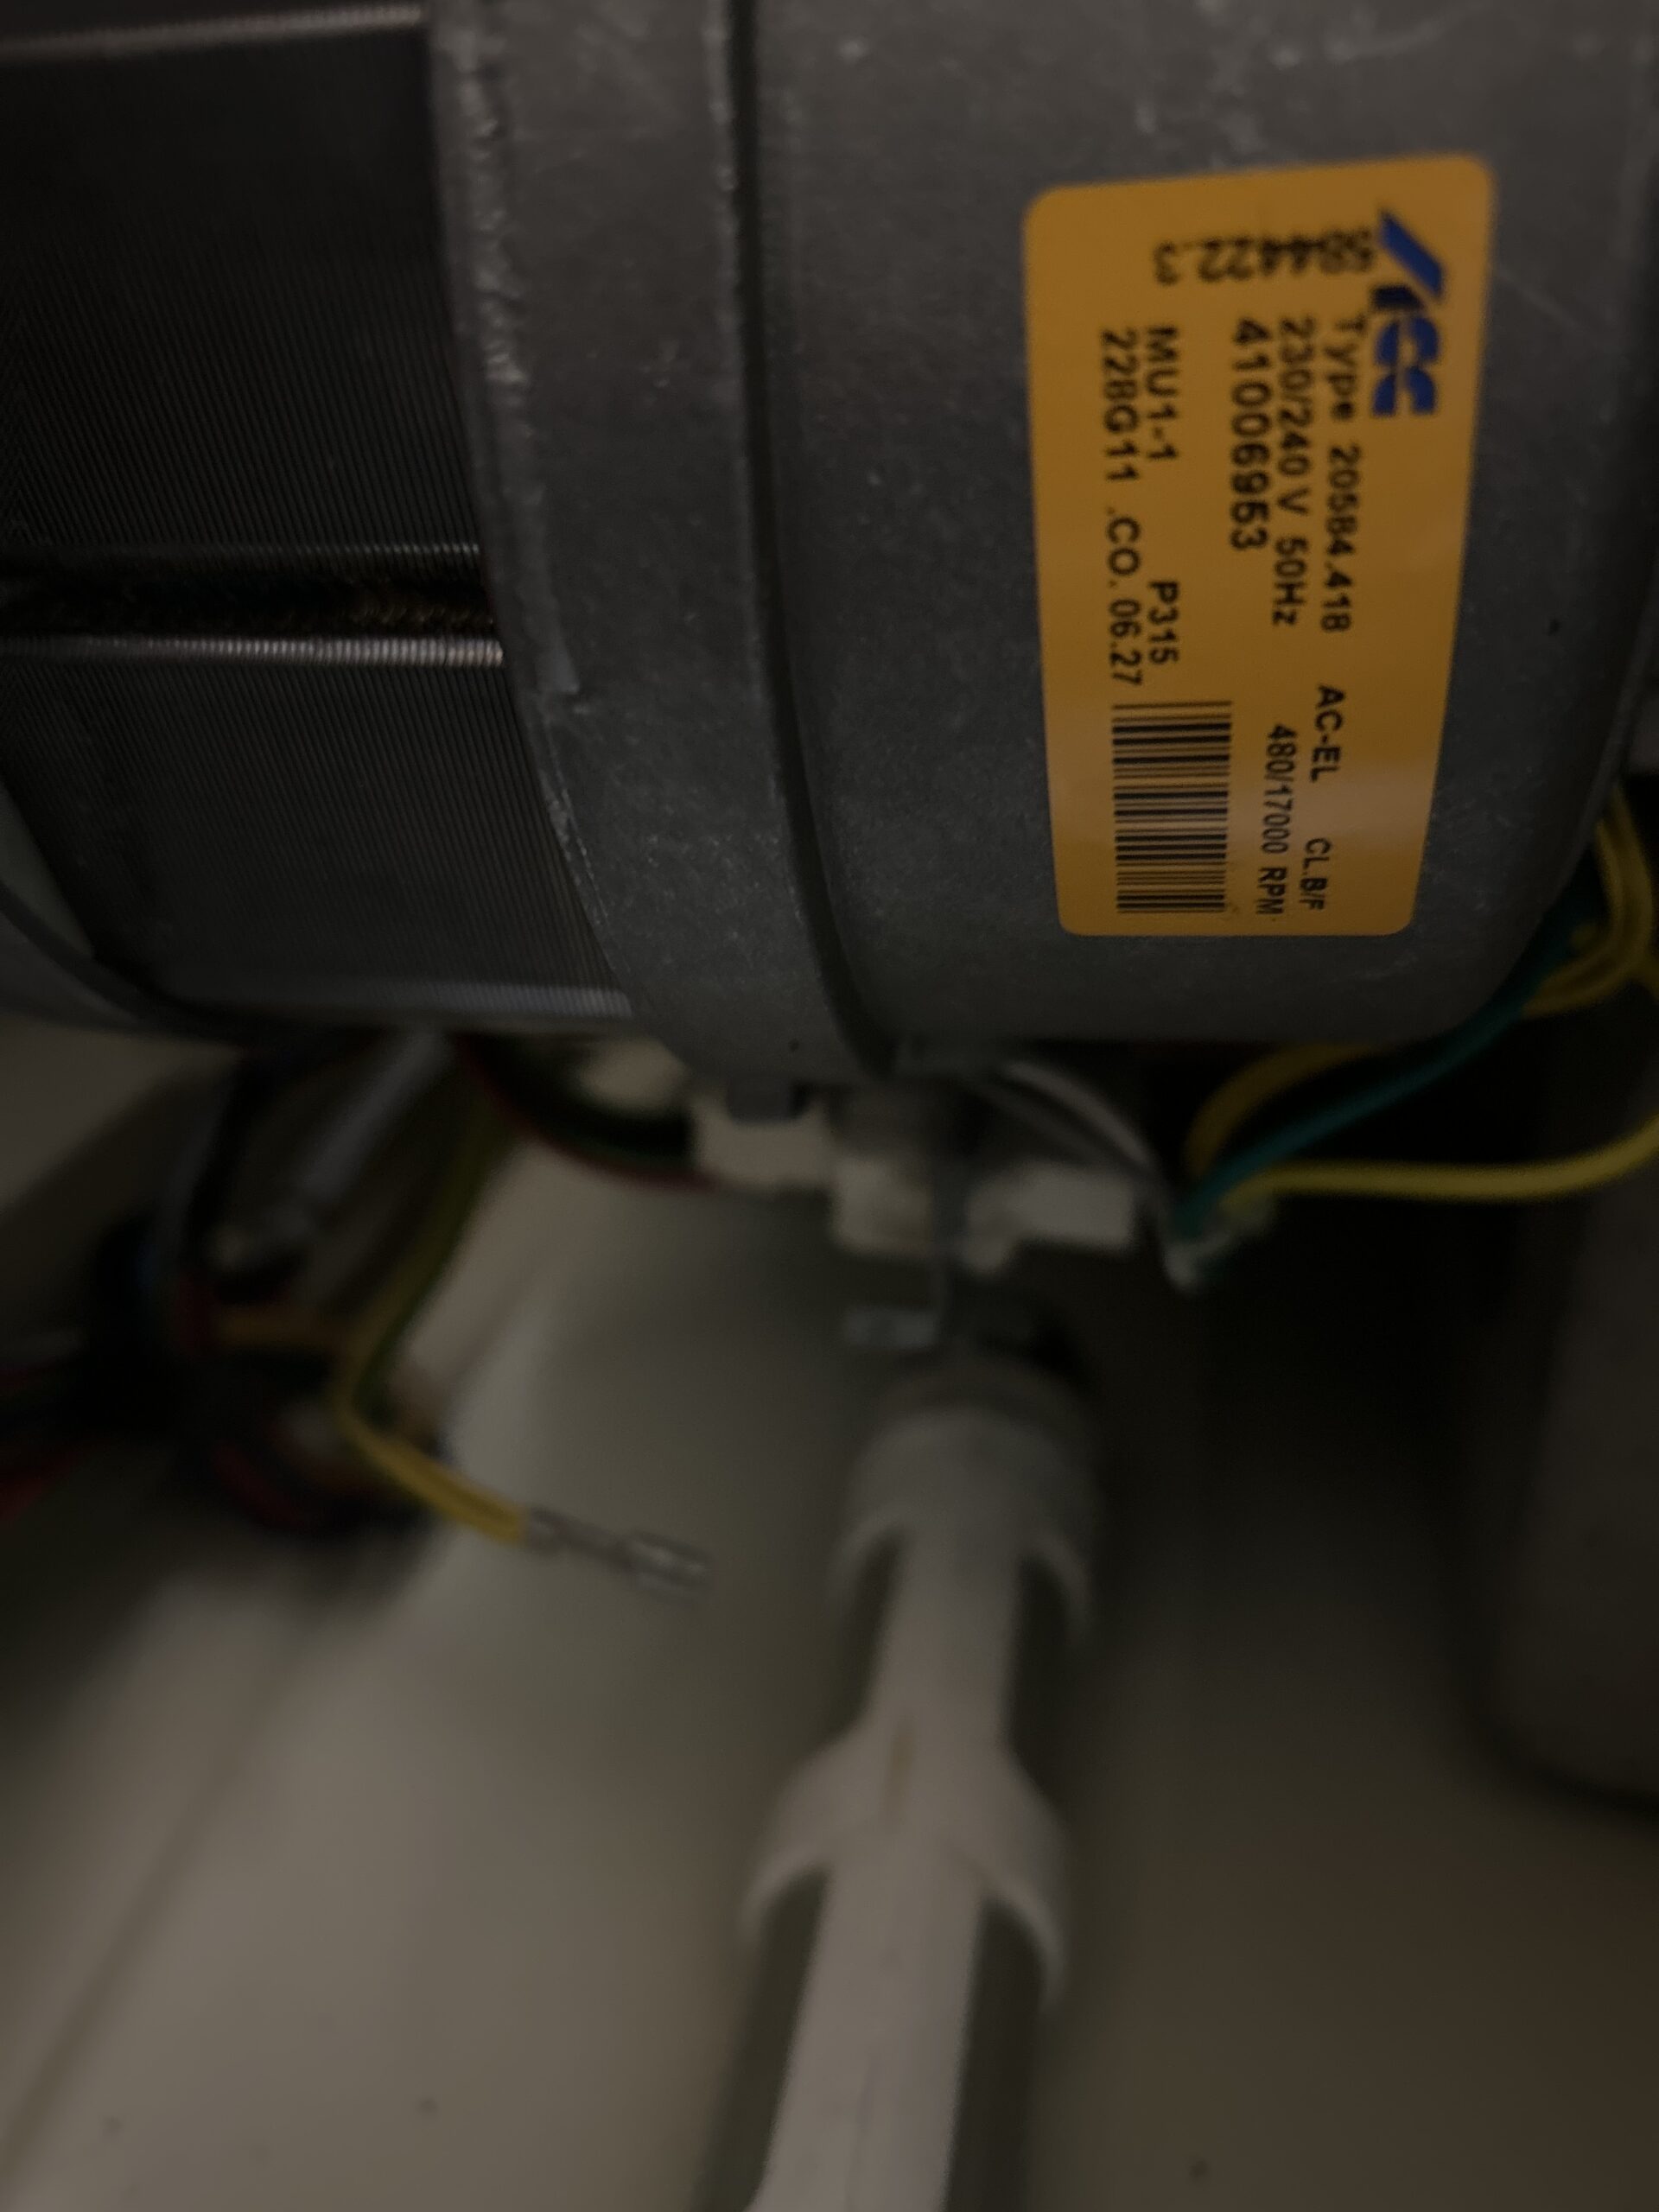 Odłączony przewód uziemienia w pralce Hoover VHD33 512 D-16S 3100268 - jak go podłączyć?